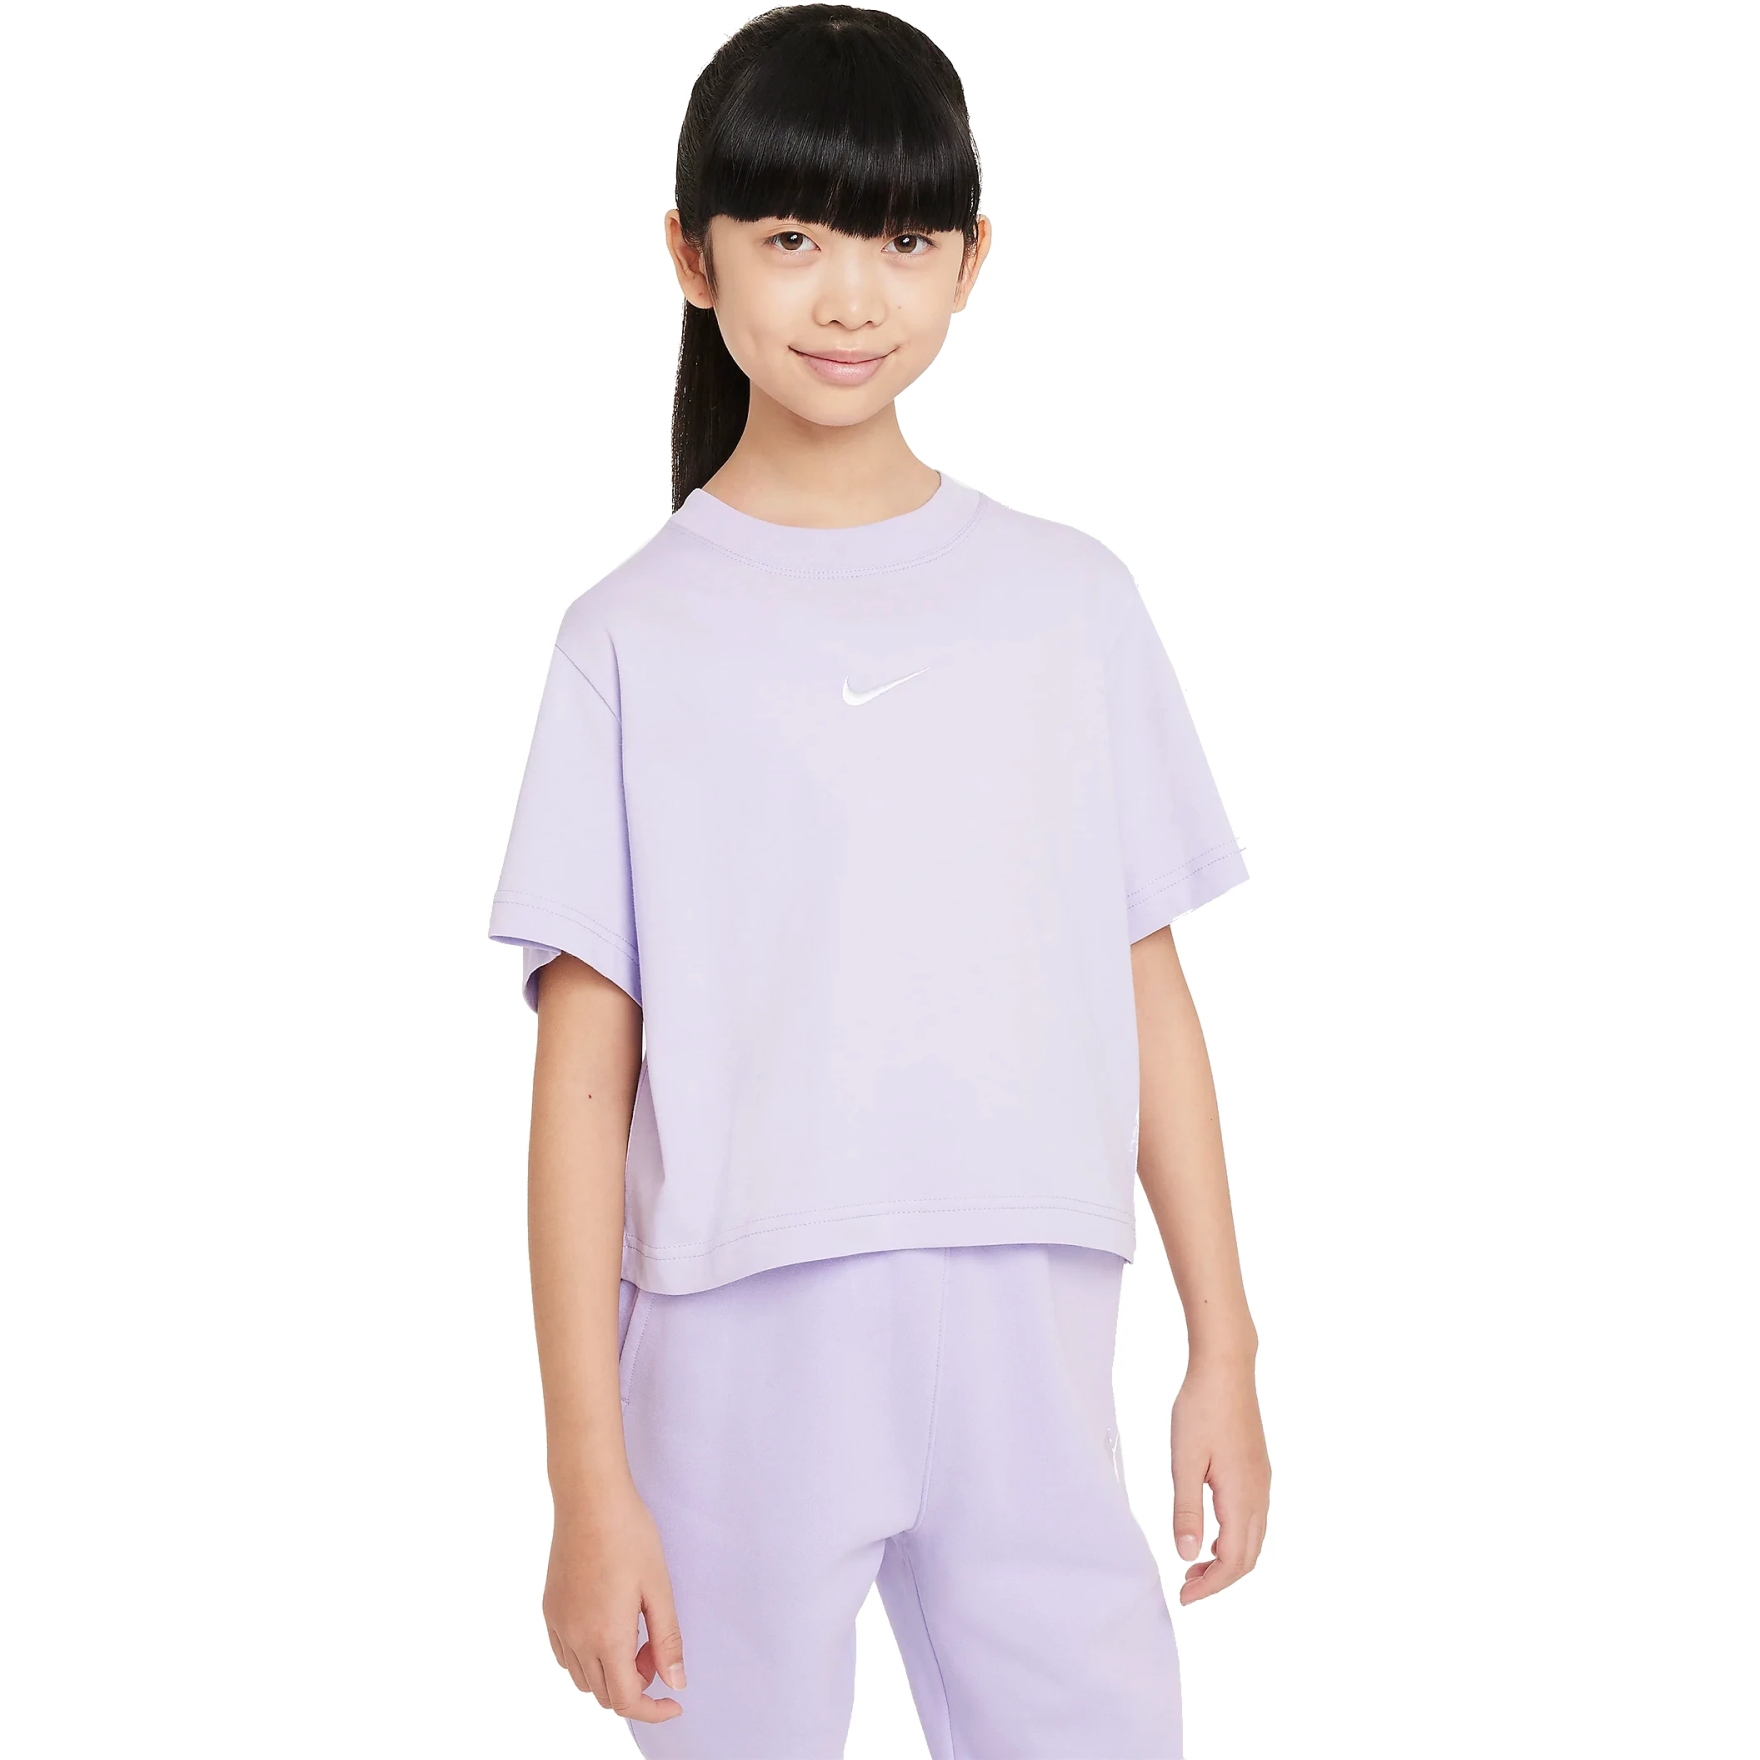 Produktbild von Nike Sportswear T-Shirt für ältere Kinder - hydrangeas/white DH5750-515